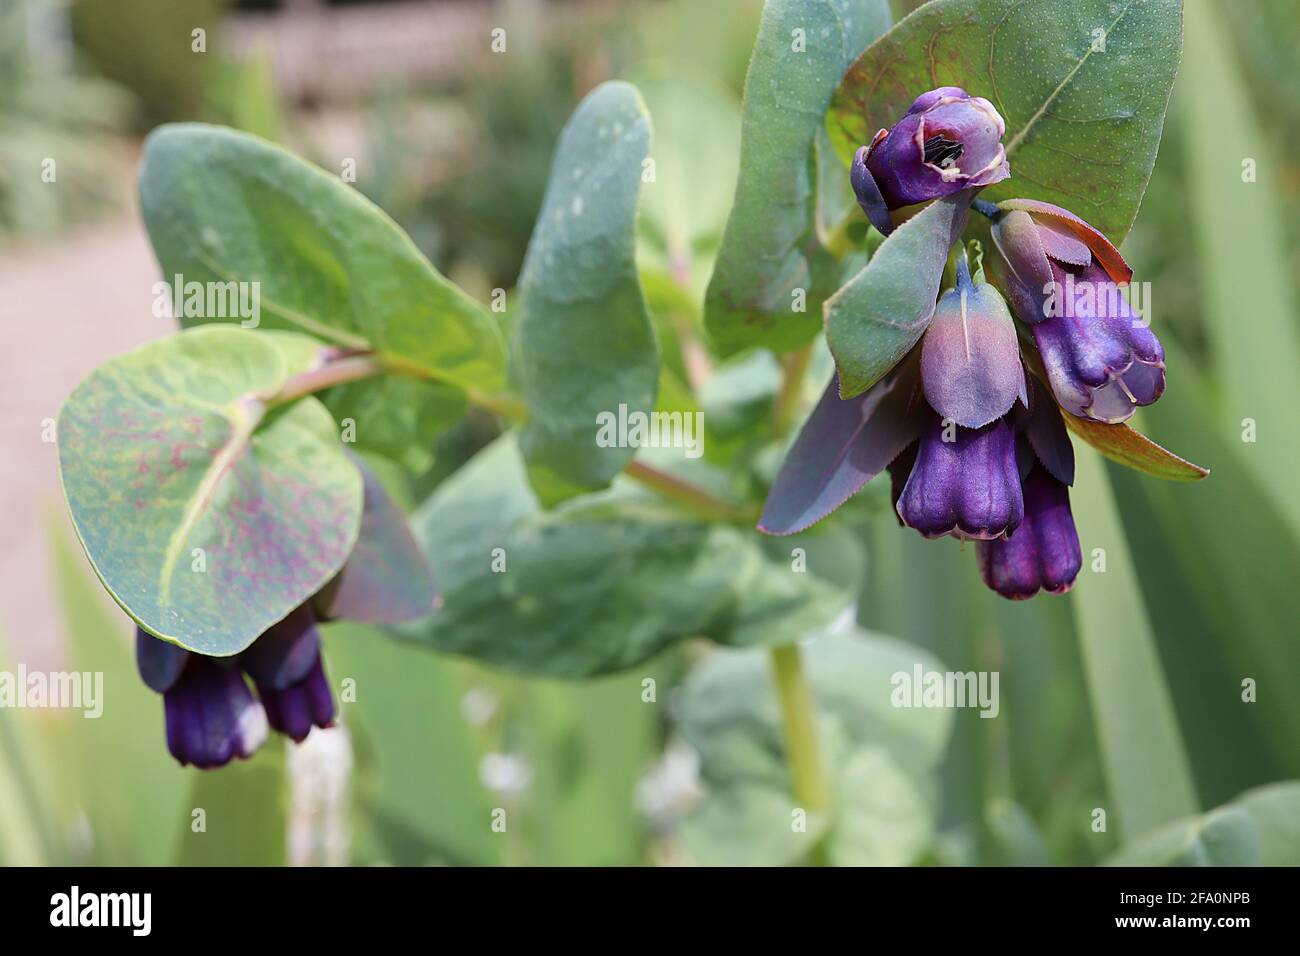 Cerinthe grand purpurascens bleu nid d'abeille – fleurs en forme de cloche à cannelures violet profond et feuilles vertes bleues, avril, Angleterre, Royaume-Uni Banque D'Images